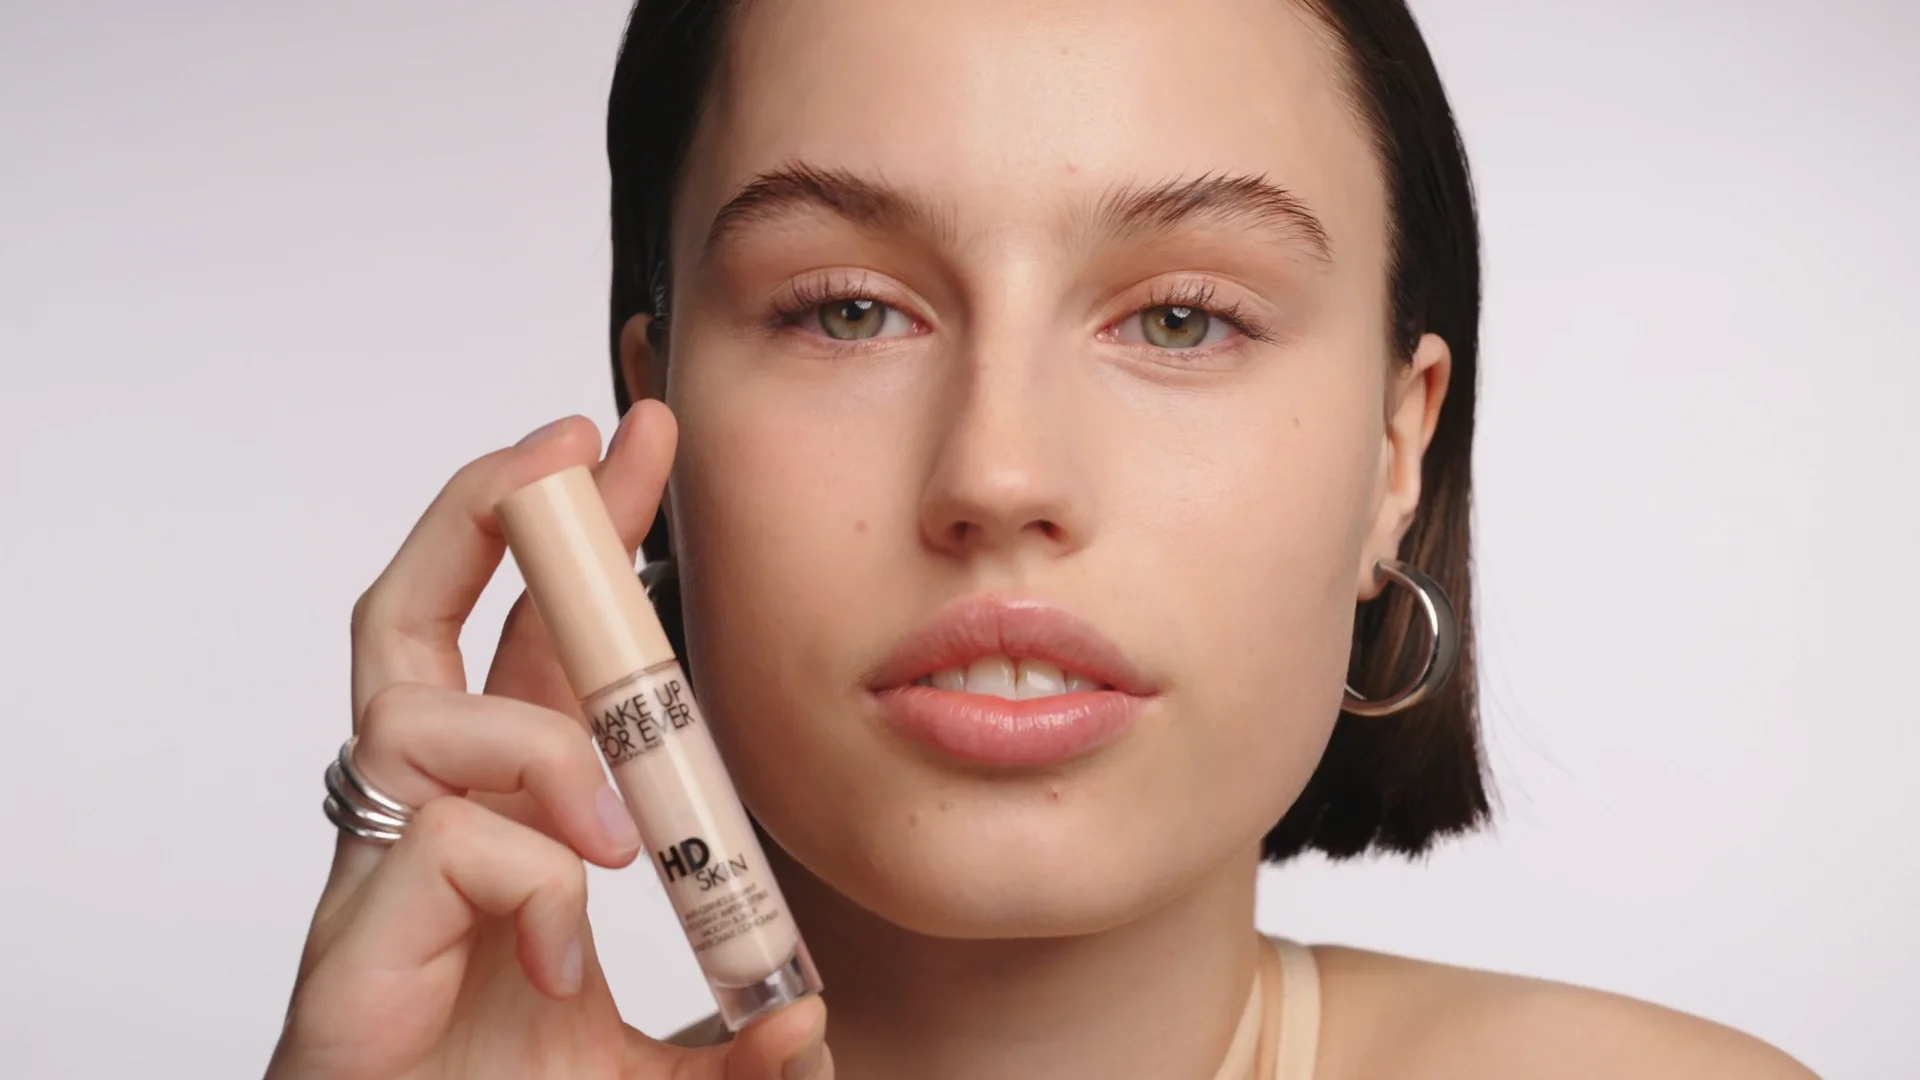 Make Up For Ever - HD Skin Concealer on Vimeo